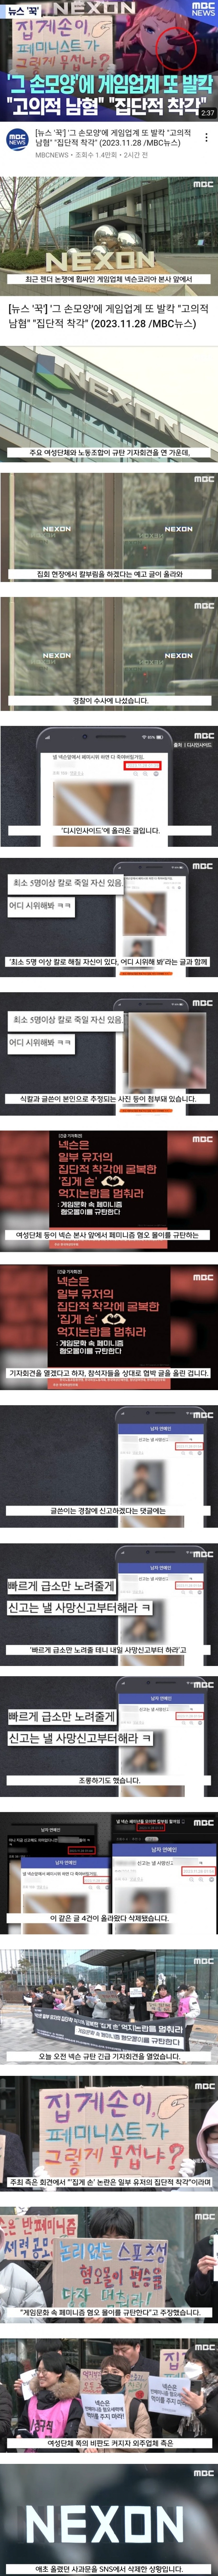 남혐 게임 사건에 대한 MBC의 보도 - 17